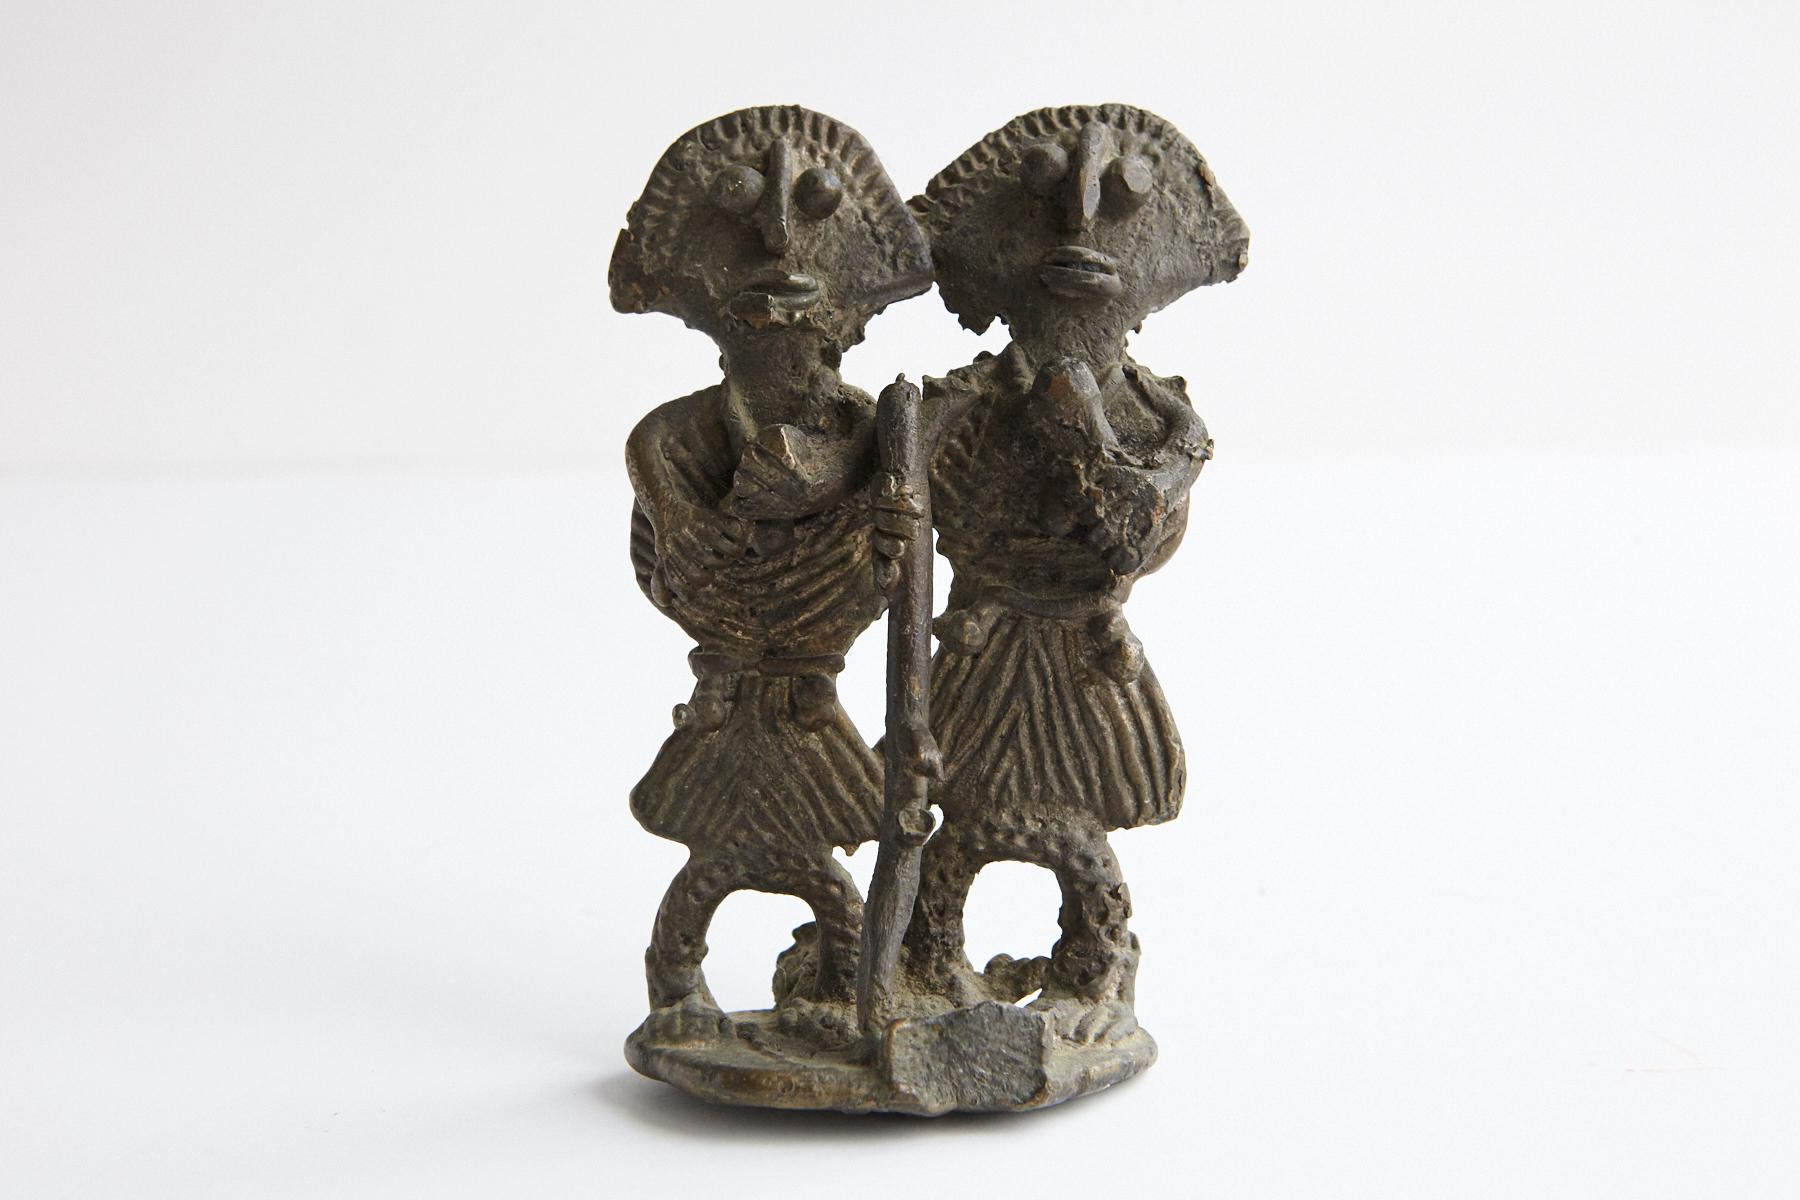 Akan-Ashanti-Figur aus Bronze. Das Volk der Ashanti oder Asante in Ghana hat eine reiche Tradition in der Herstellung von Bronzestücken zum Gedenken an wichtige Persönlichkeiten ihrer Kultur oder ihres Stammes oder ihrer Familie. 
Die Figuren werden